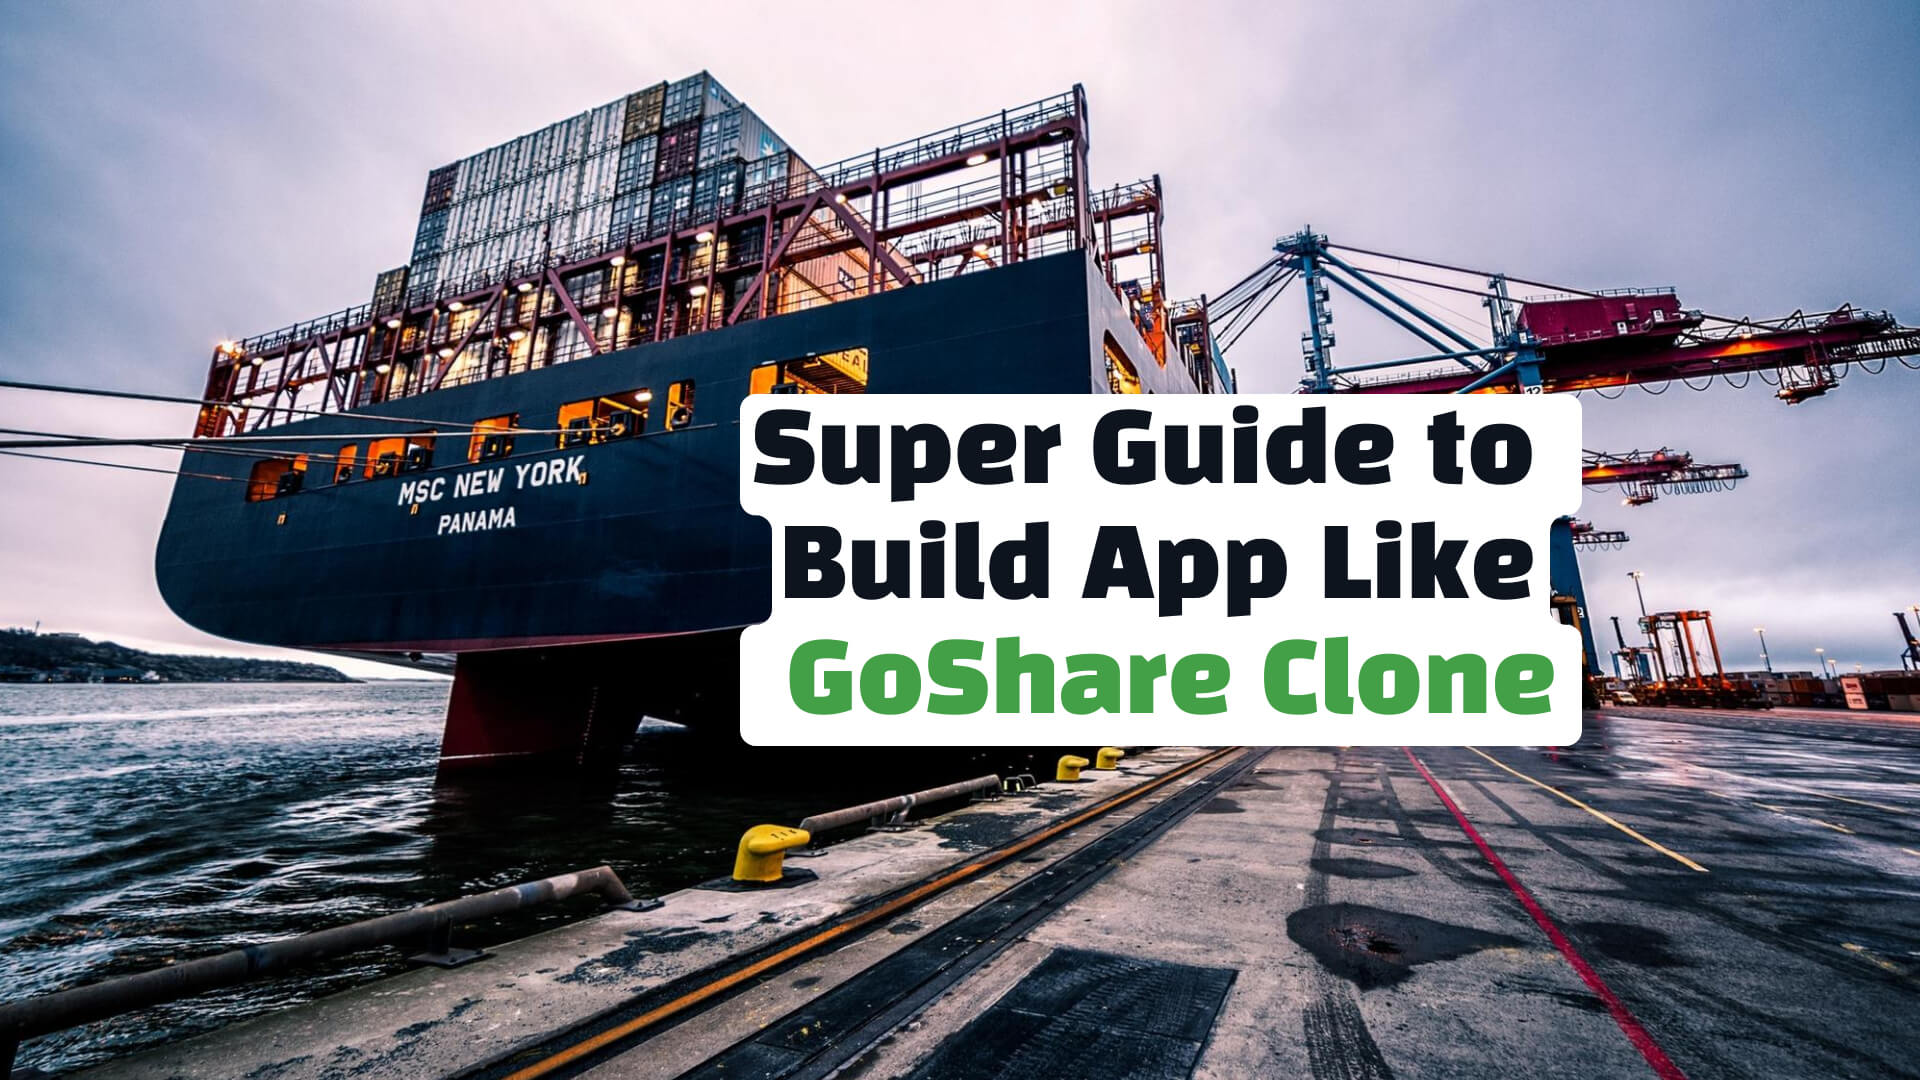 GoShare Clone: Super Guide to Build App Like GoShare